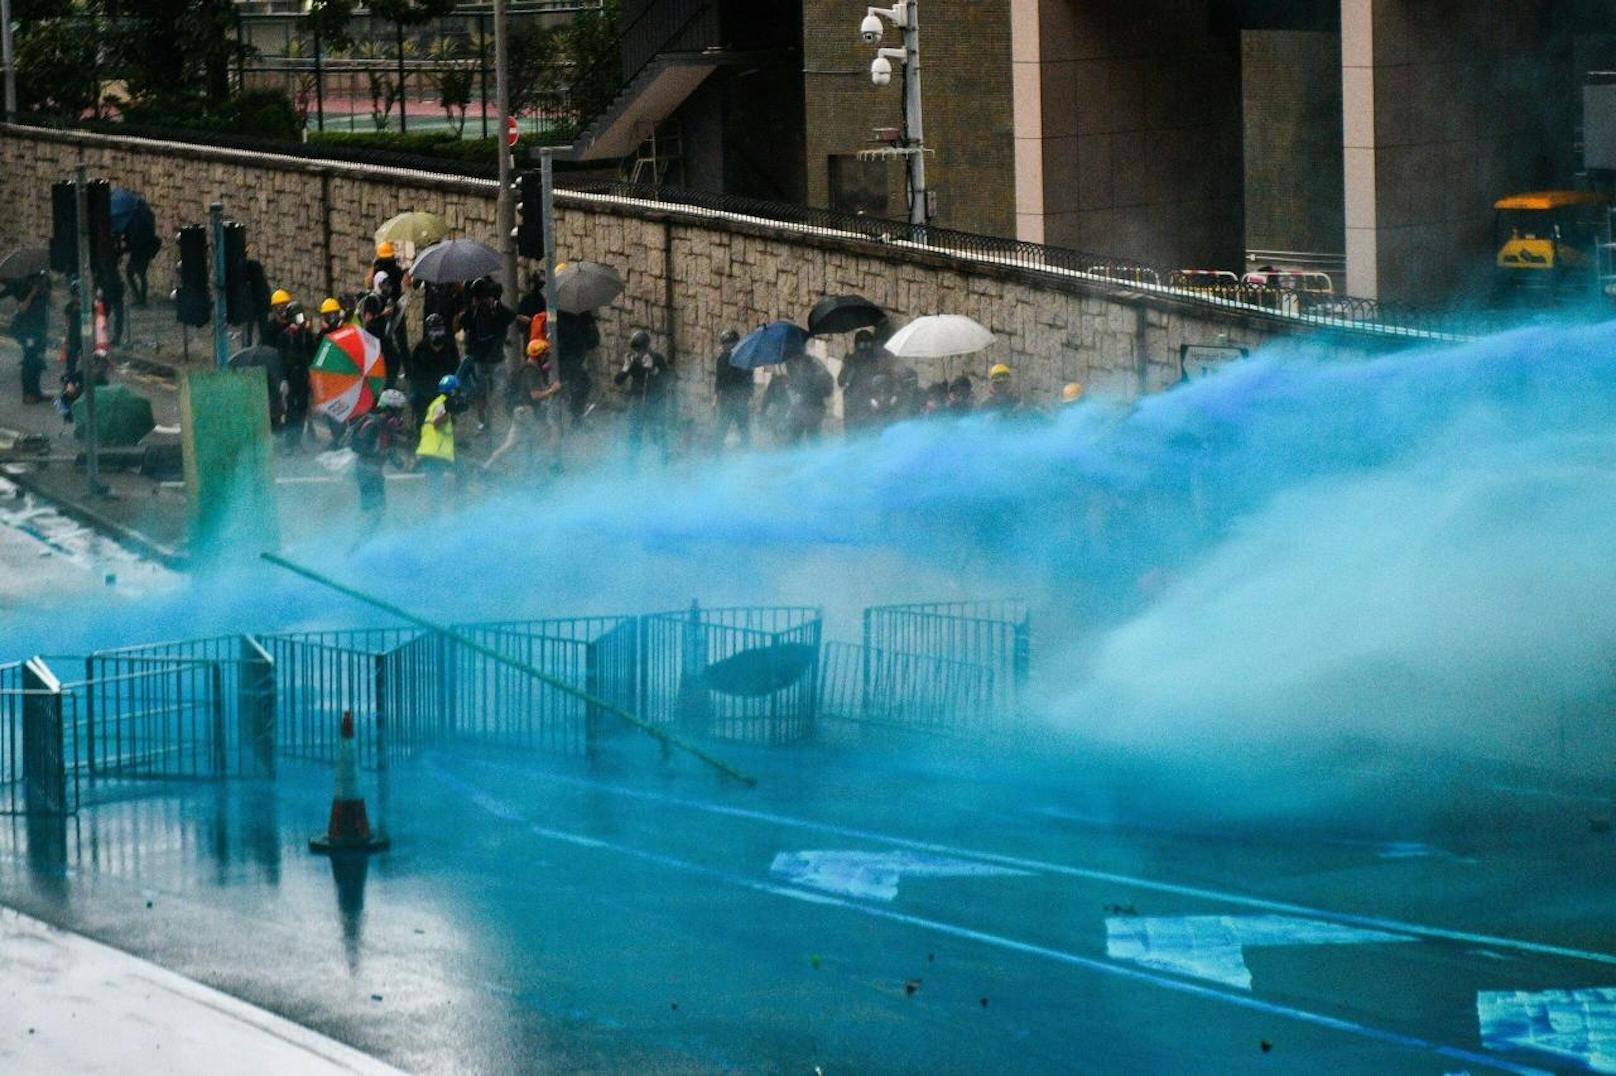 Am 31. August wollten Demonstranten das Parlament Hongkongs stürmen. Die Polizei konterte mit Wasserwerfern.